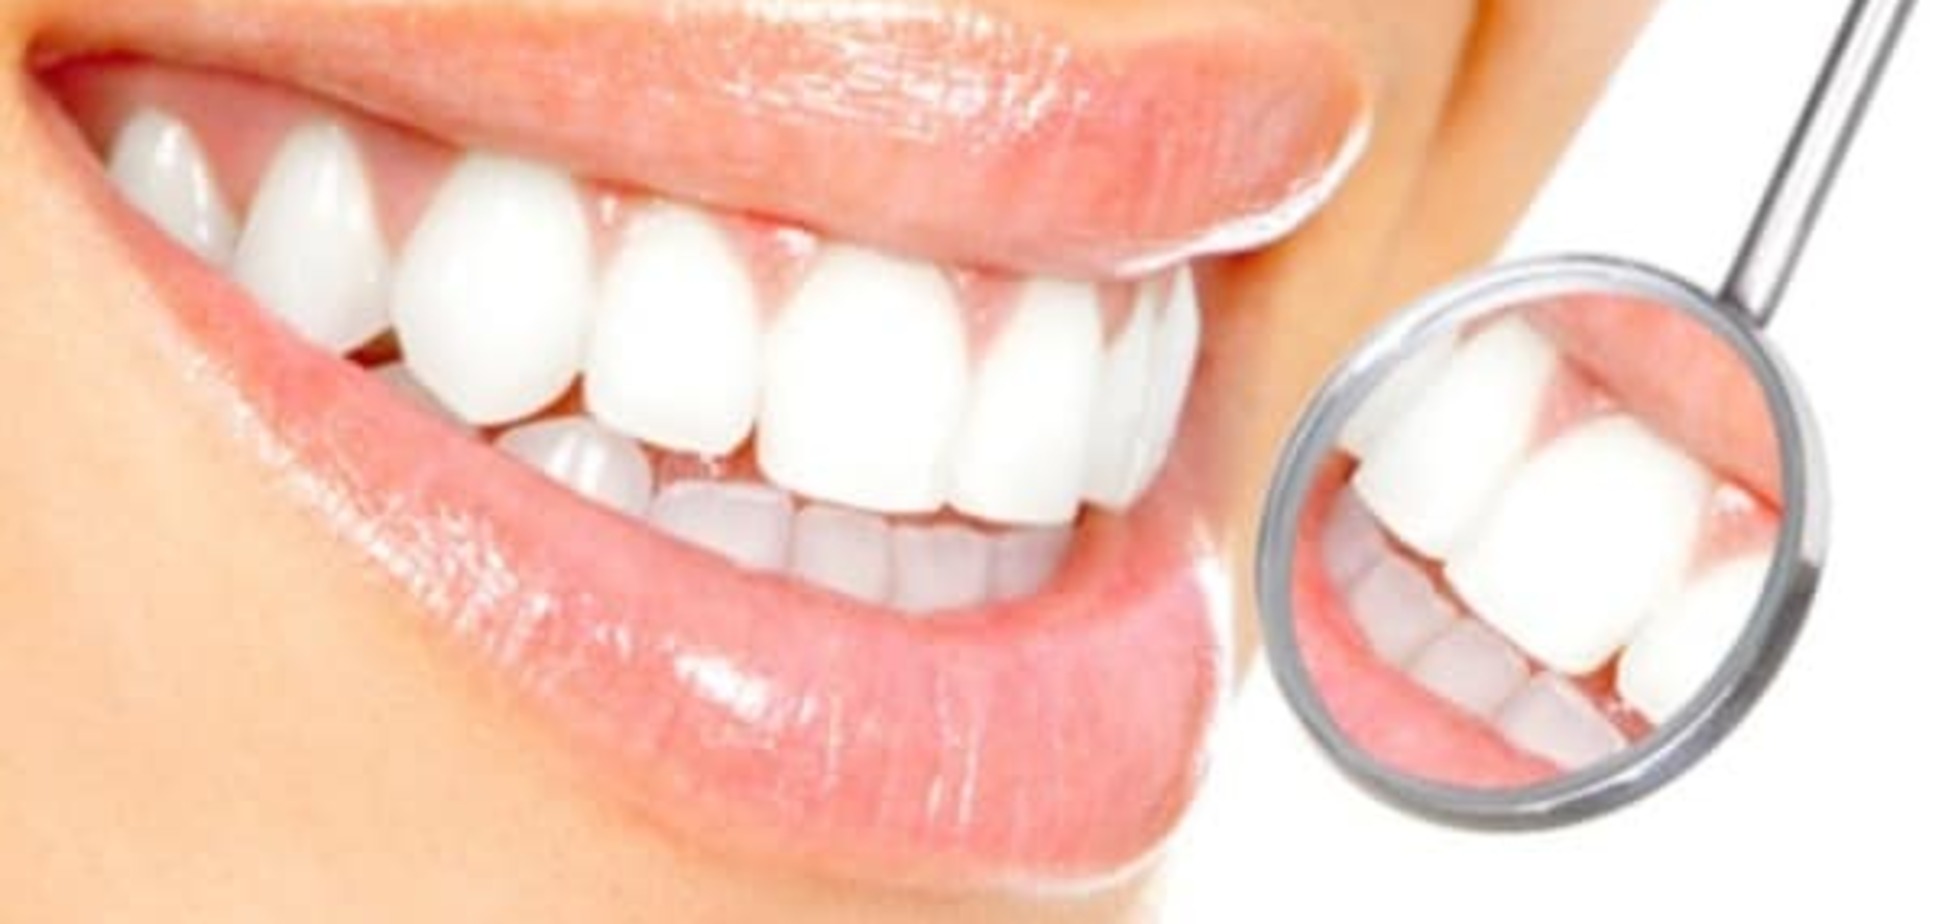 Проблемы с зубами: советы экспертов по уходу за полостью рта